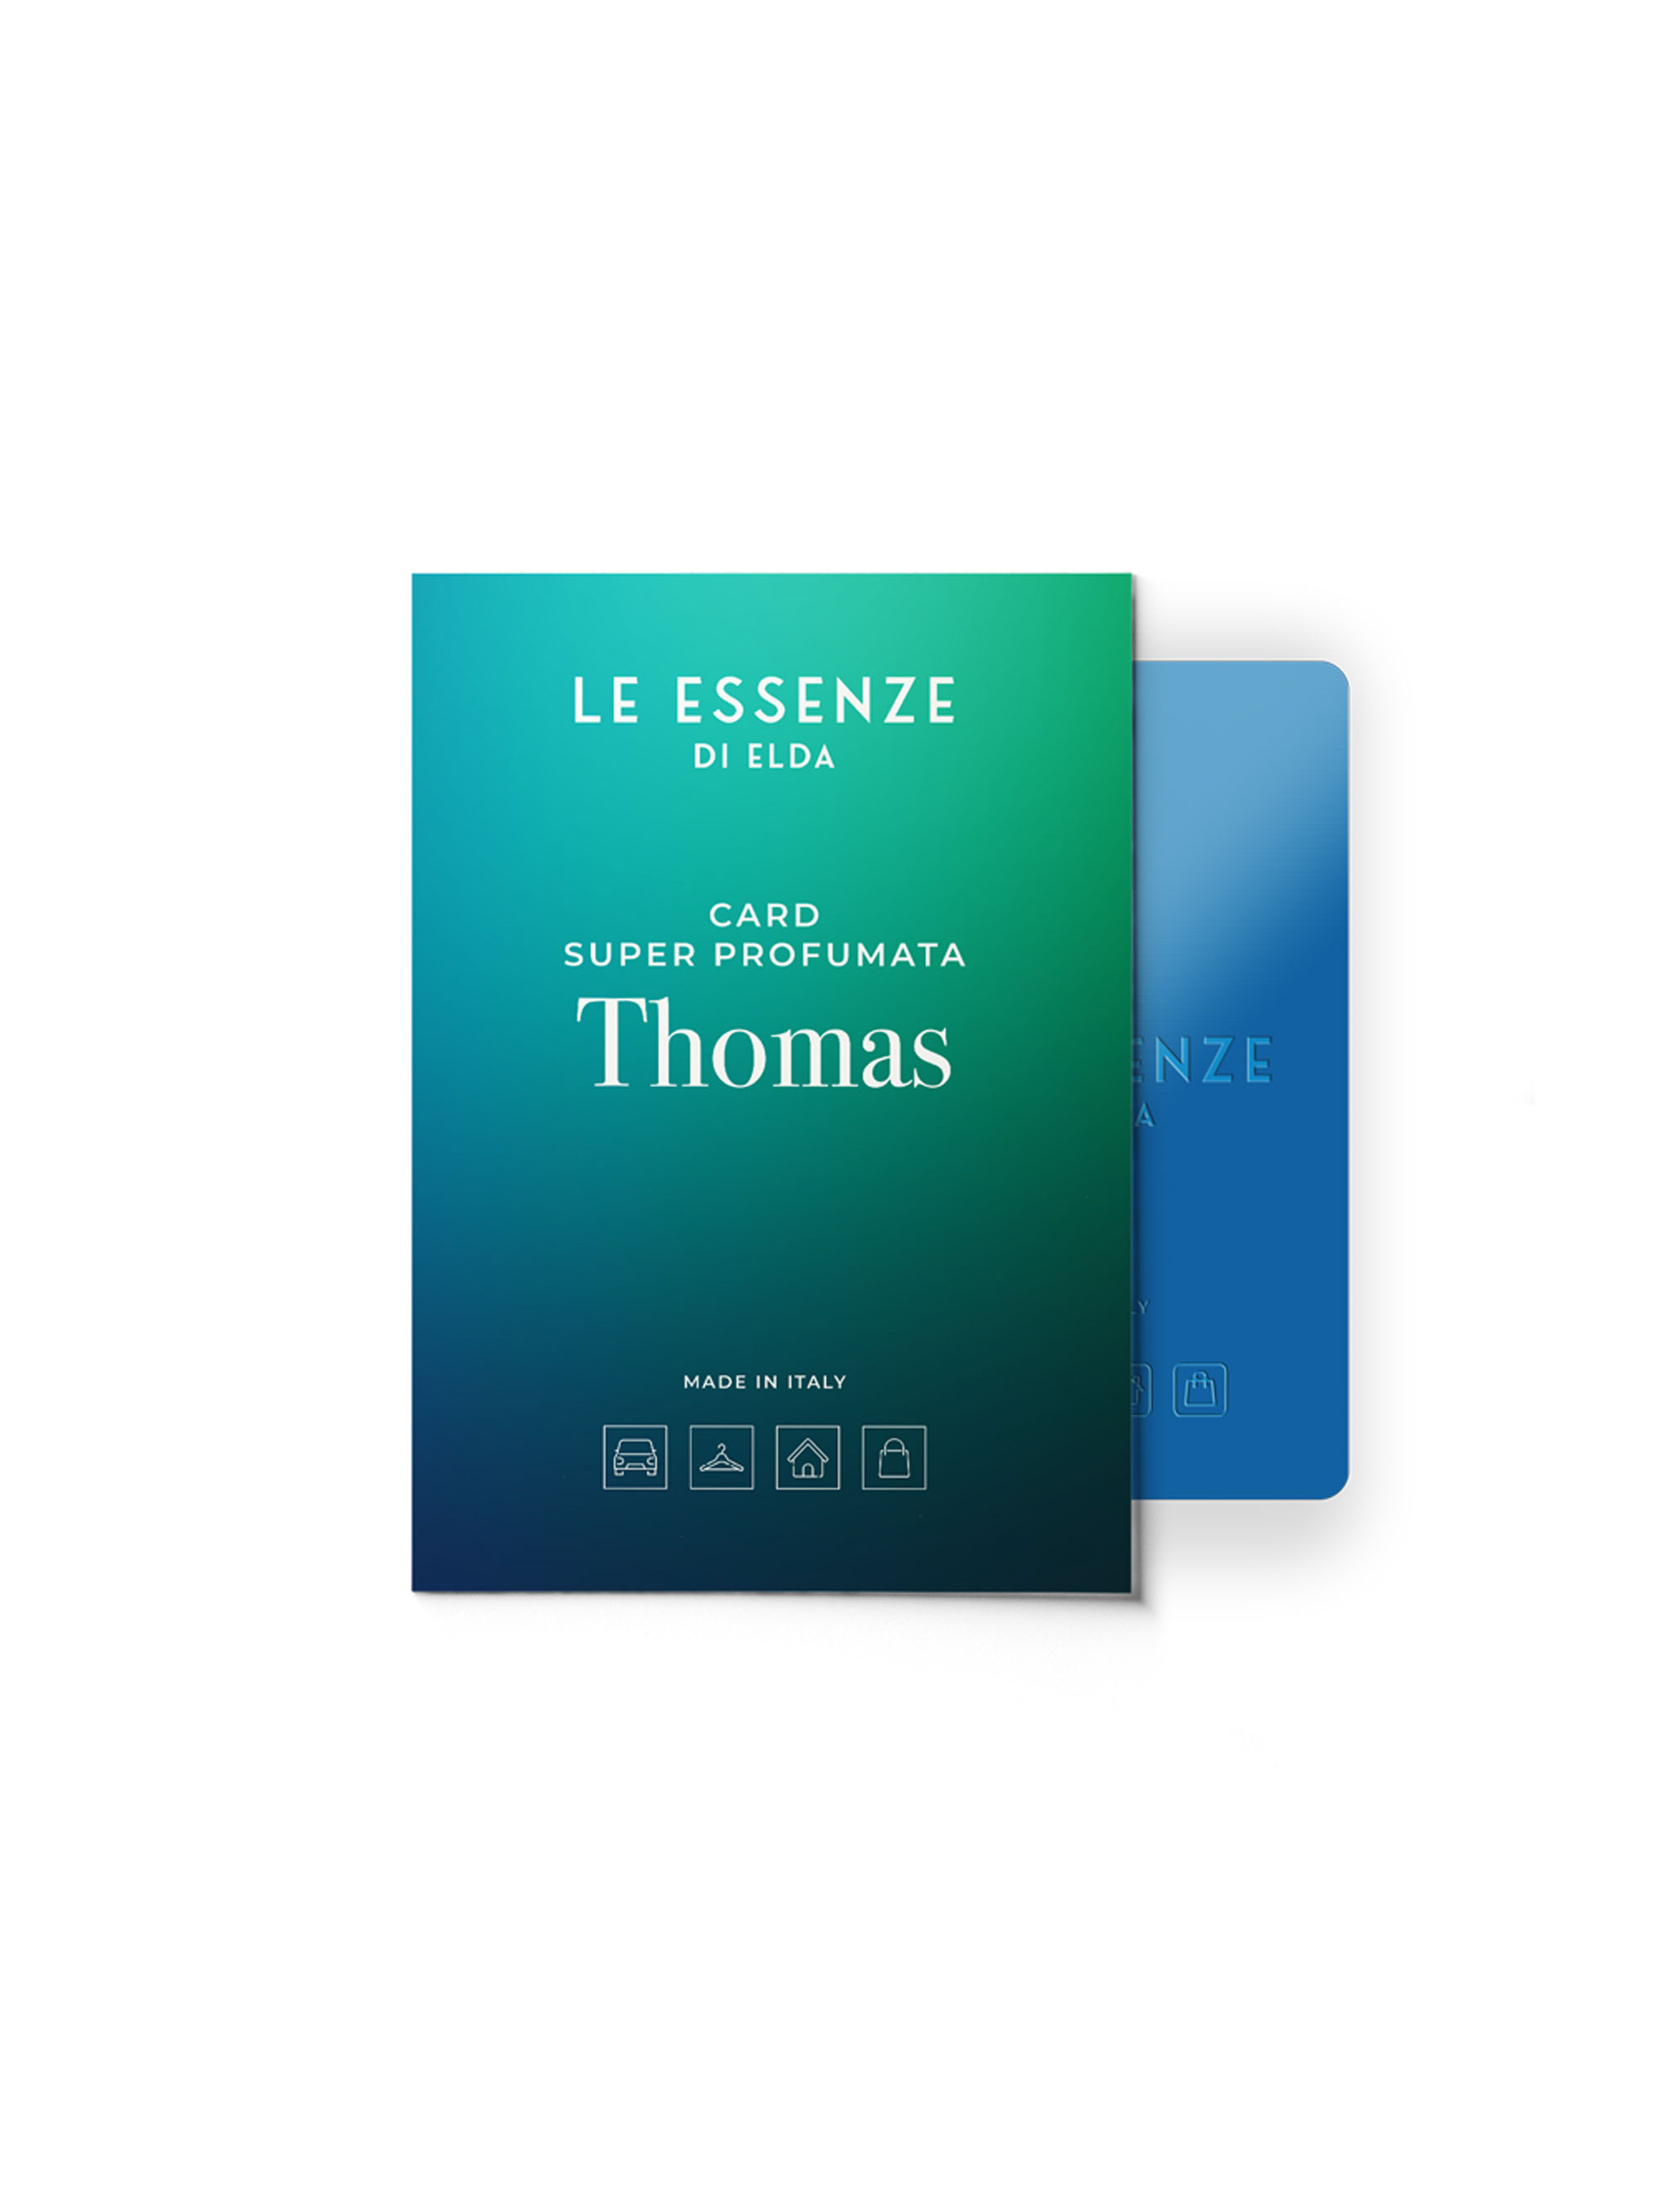 Card Super Profumata Thomas - cartes super parfumées